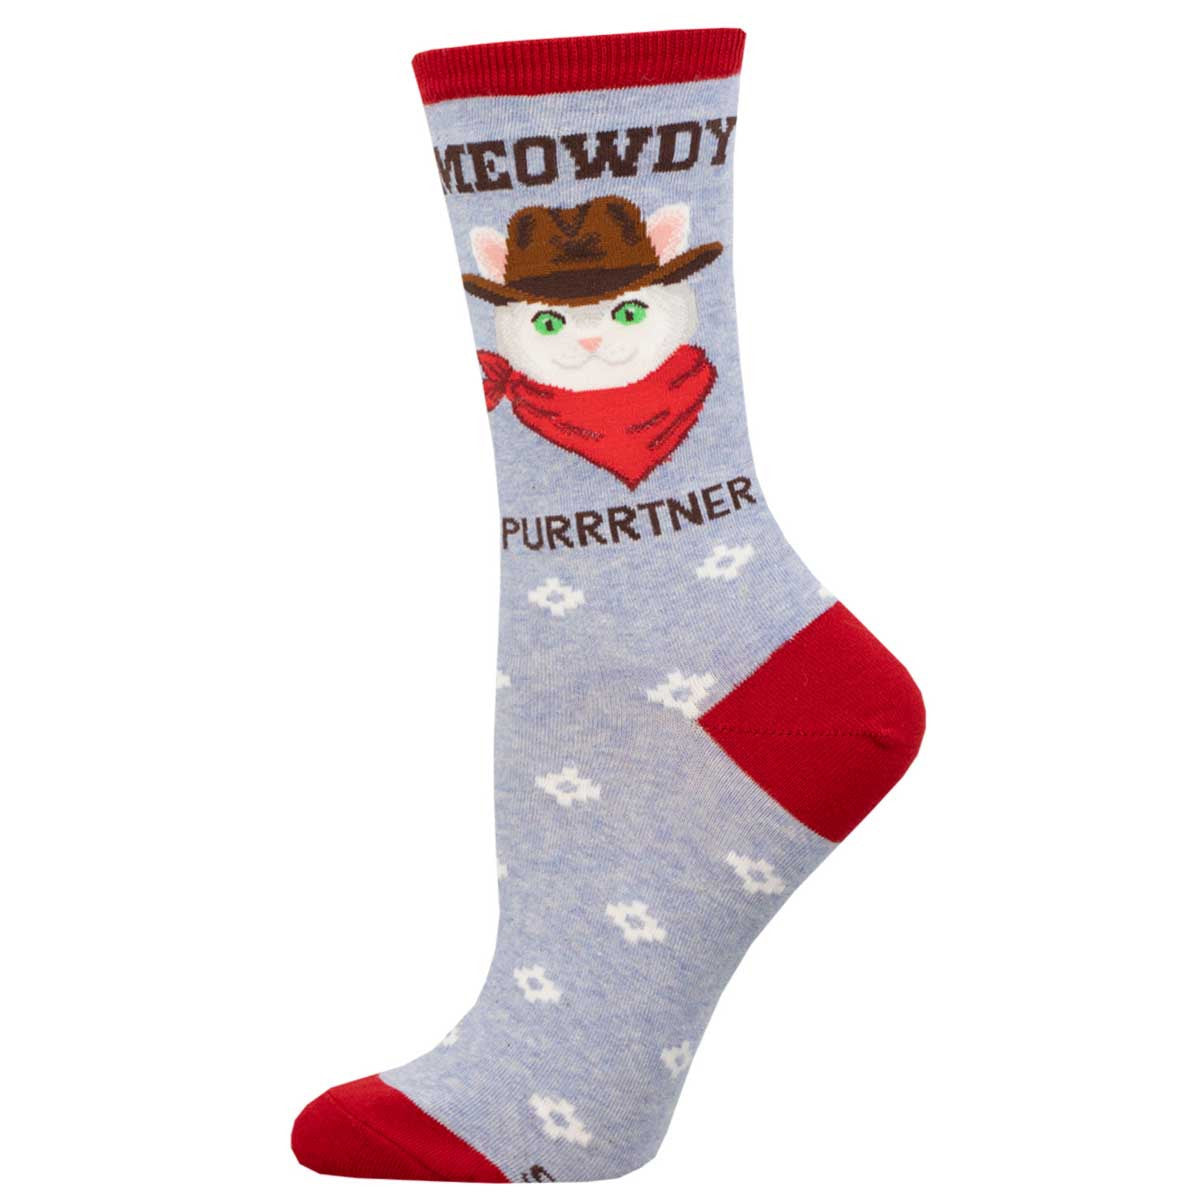 Meowdy Purrtner Socks